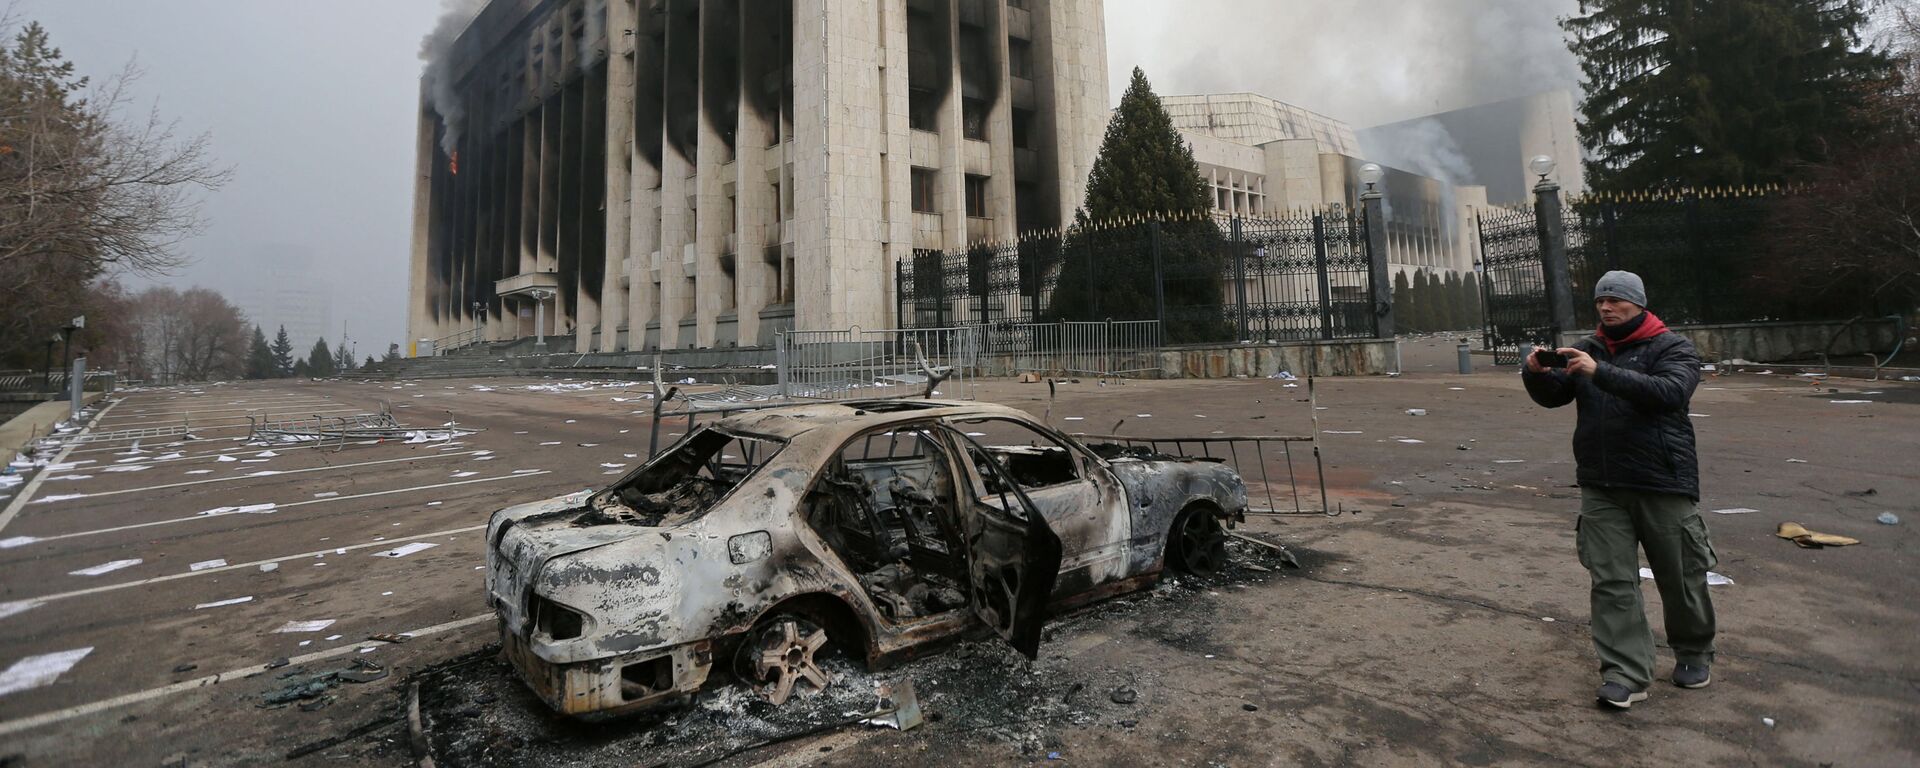 Сгоревший автомобиль перед зданием мэрии, которое было подожжено во время протестов в Алматы - Sputnik Таджикистан, 1920, 09.01.2022